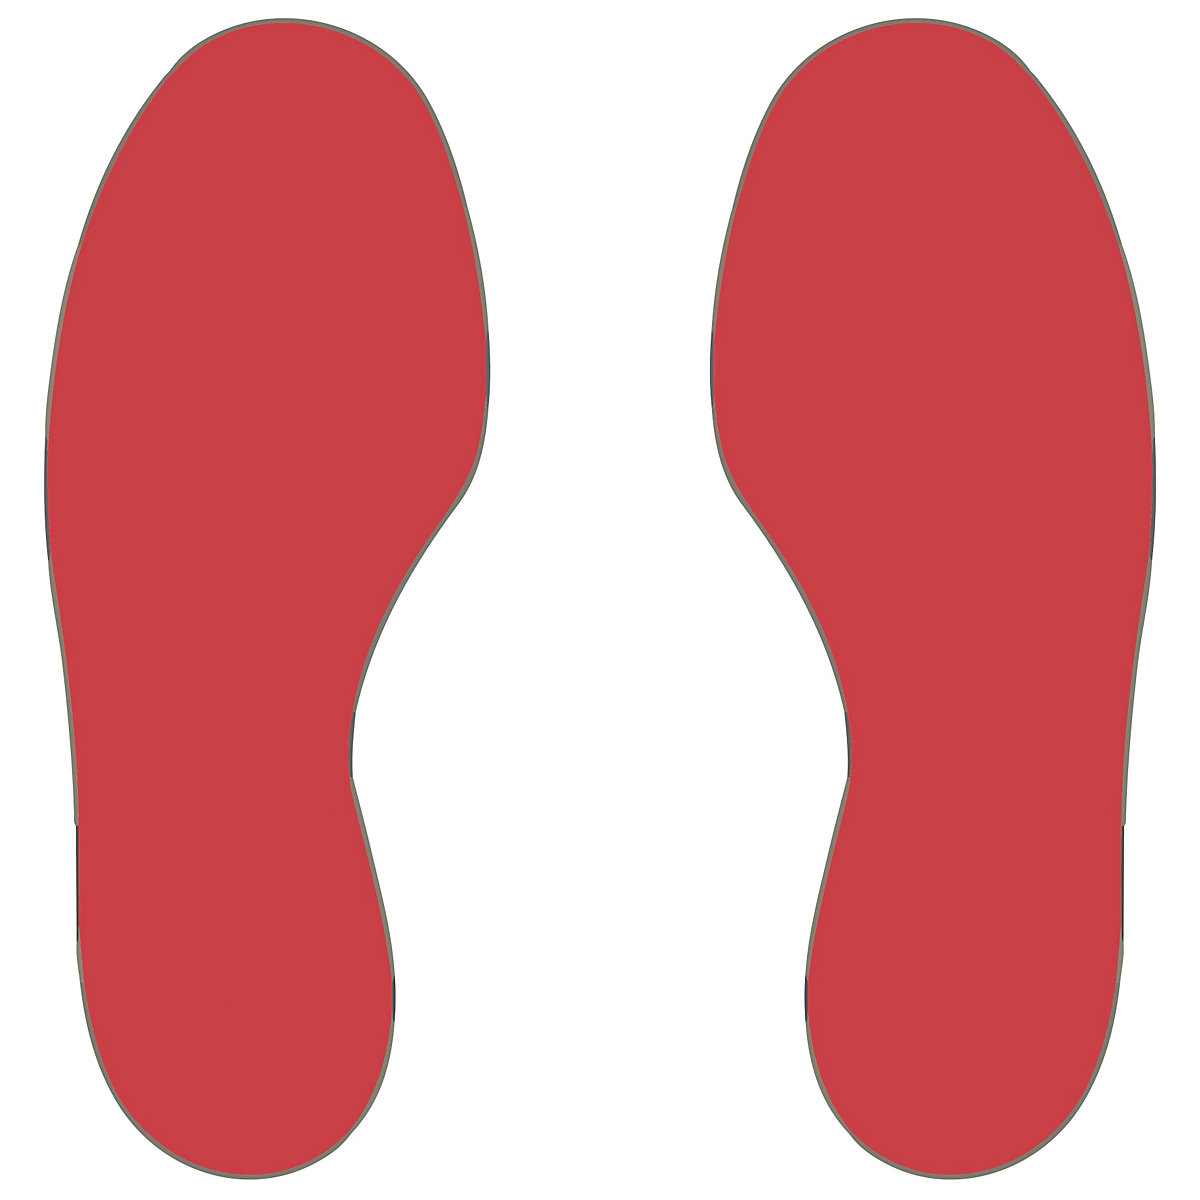 PVC padlójelölések, lábak, 25 jobb / 25 bal láb, cs. e. 50 db, piros